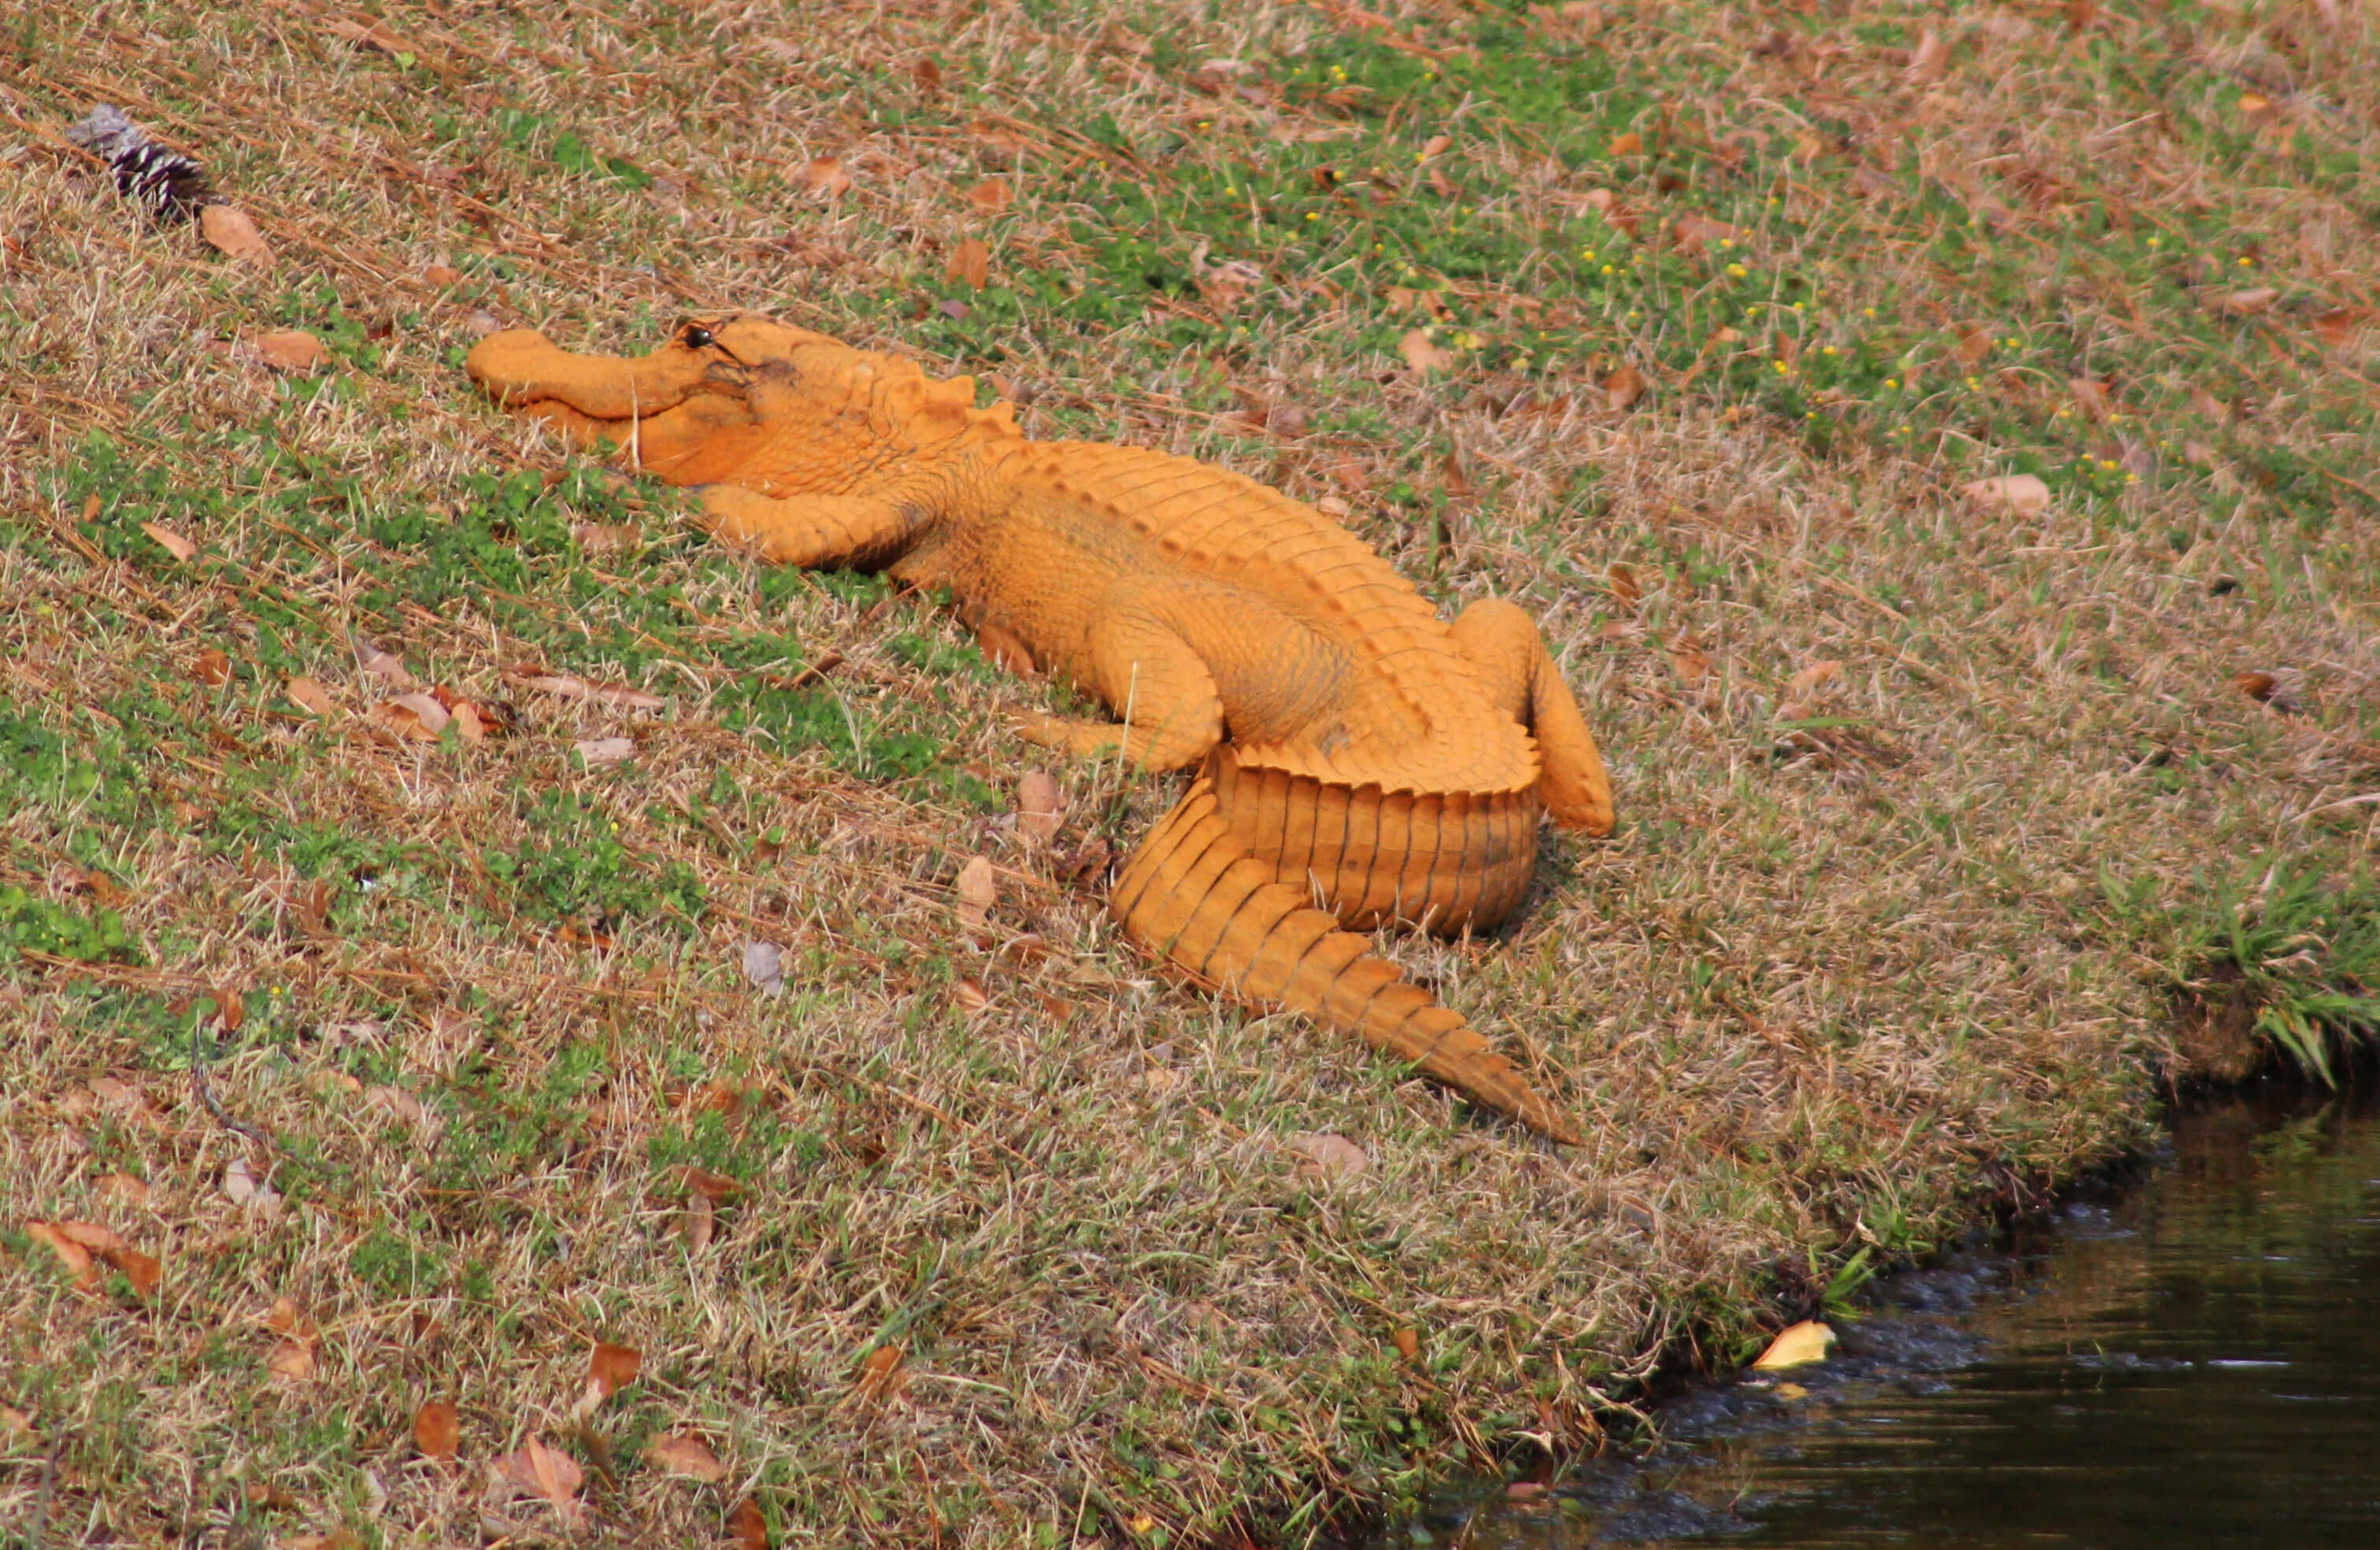 La gente ha visto varias veces al caimán anaranjado que mide alrededor de metro y medio en el estanque en Hanahan. (AP)